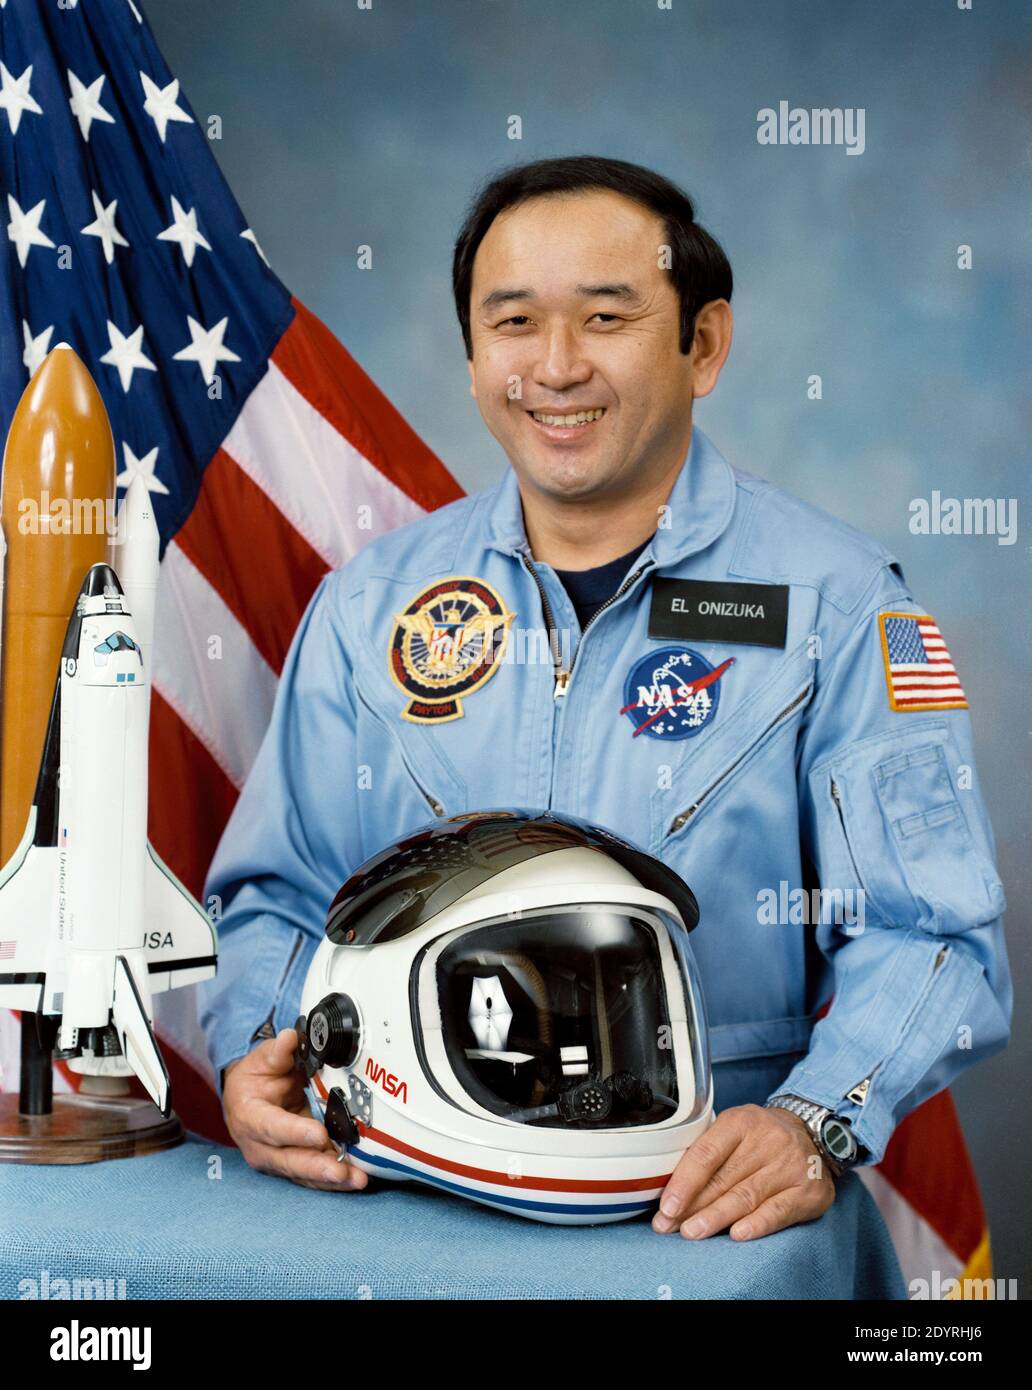 Ellison Shoji Onizuka (24 de junio de 1946 – 28 de enero de 1986) astronauta e ingeniero estadounidense de Kealakekua, Hawai, quien con éxito voló al espacio con el transbordador espacial Discovery en STS-51-C. Murió en la destrucción del Transbordador Espacial Challenger, en el que sirvió como Especialista de Misión para la misión STS-51-L. Fue el primer asiático americano y la primera persona de ascendencia japonesa en llegar al espacio. Foto de stock